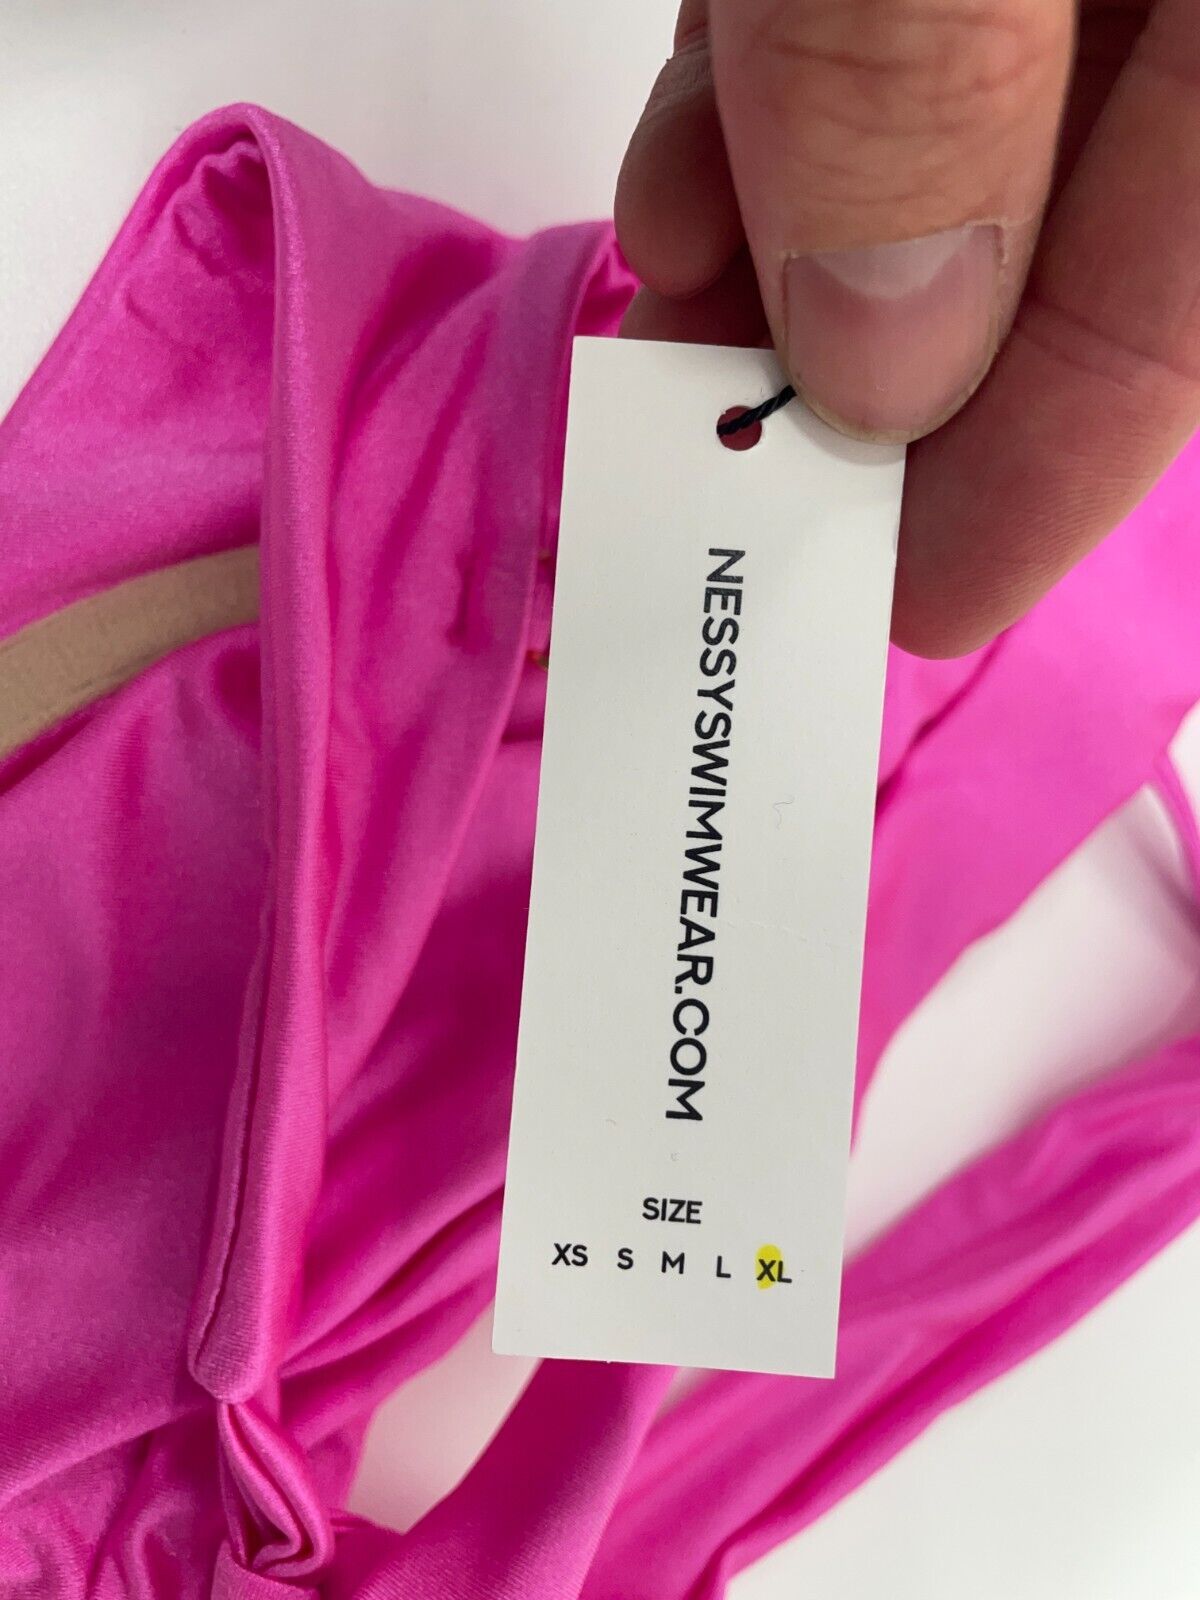 Nessy Swimwear Women's XL Jocelyn Bikini Top Blush Pink Underwire Back Bow Tie